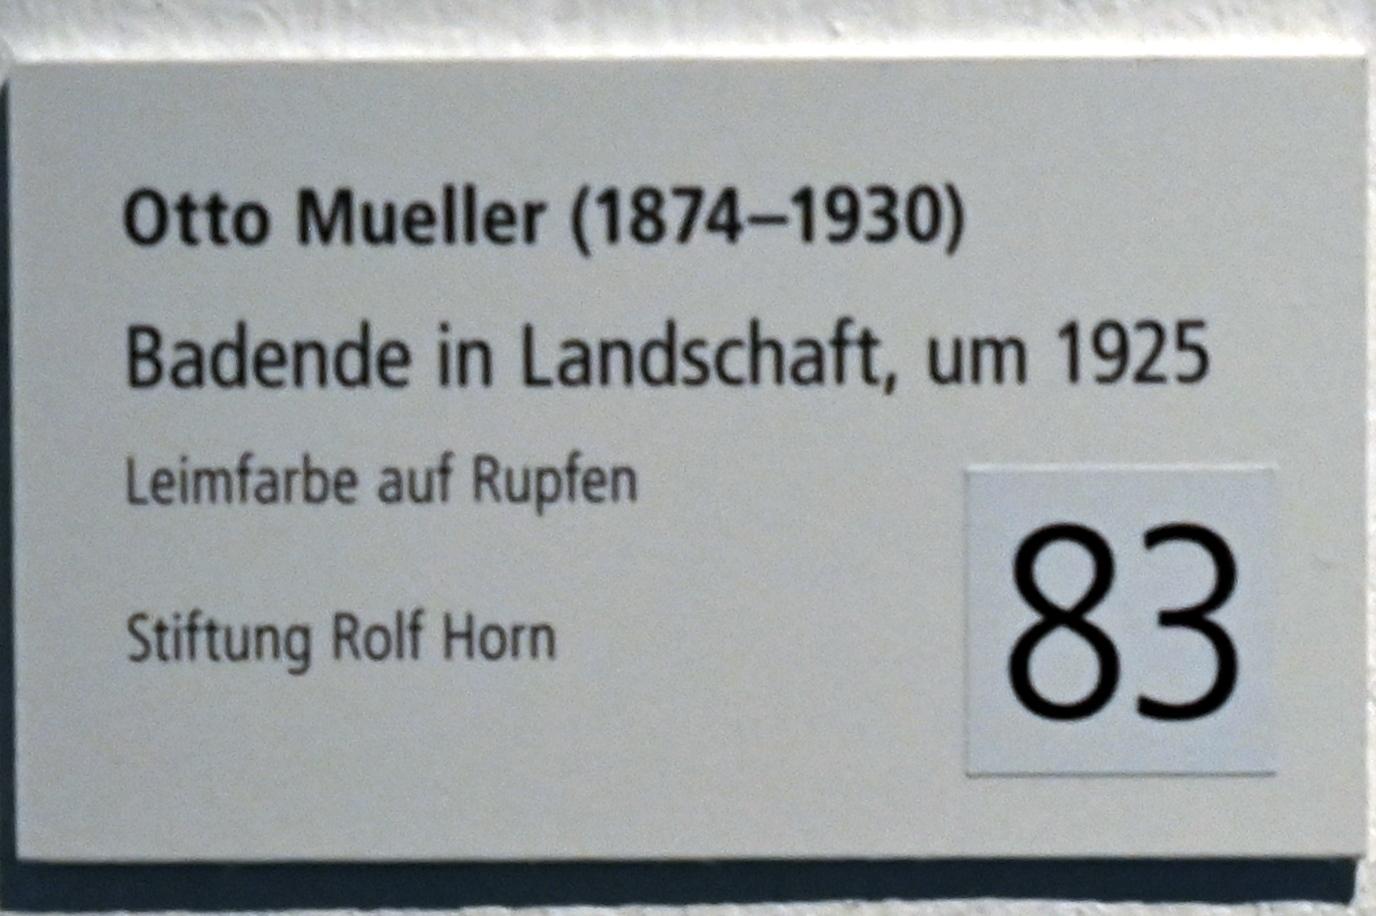 Otto Mueller (1914–1928), Badende in Landschaft, Schleswig, Landesmuseum für Kunst und Kulturgeschichte, Sammlung Rolf Horn, um 1925, Bild 2/2